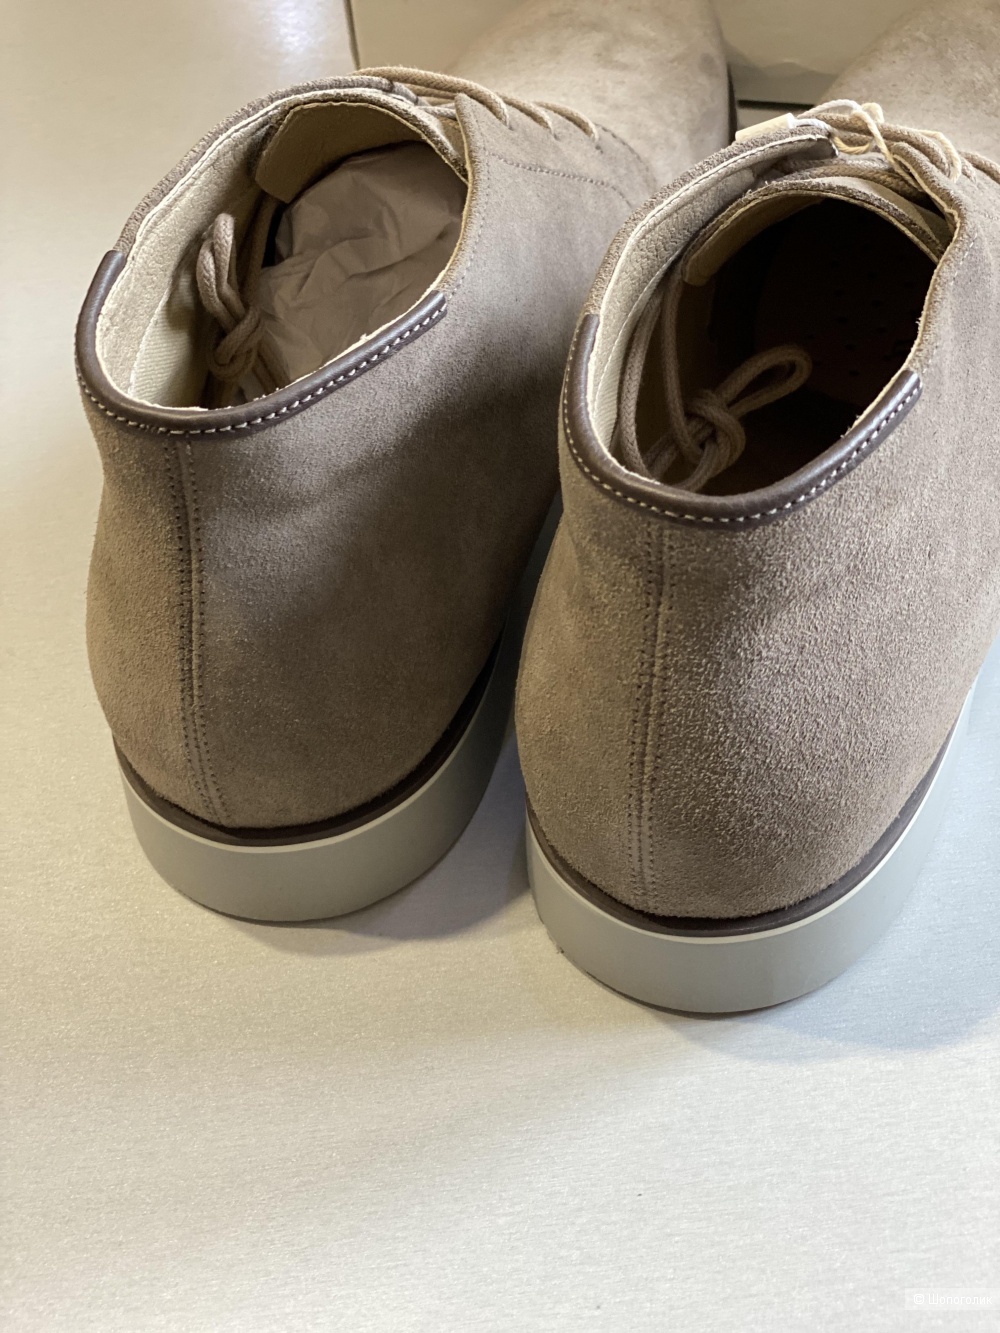 Мужские ботинки GEOX, размер 44. 29 см по стельке